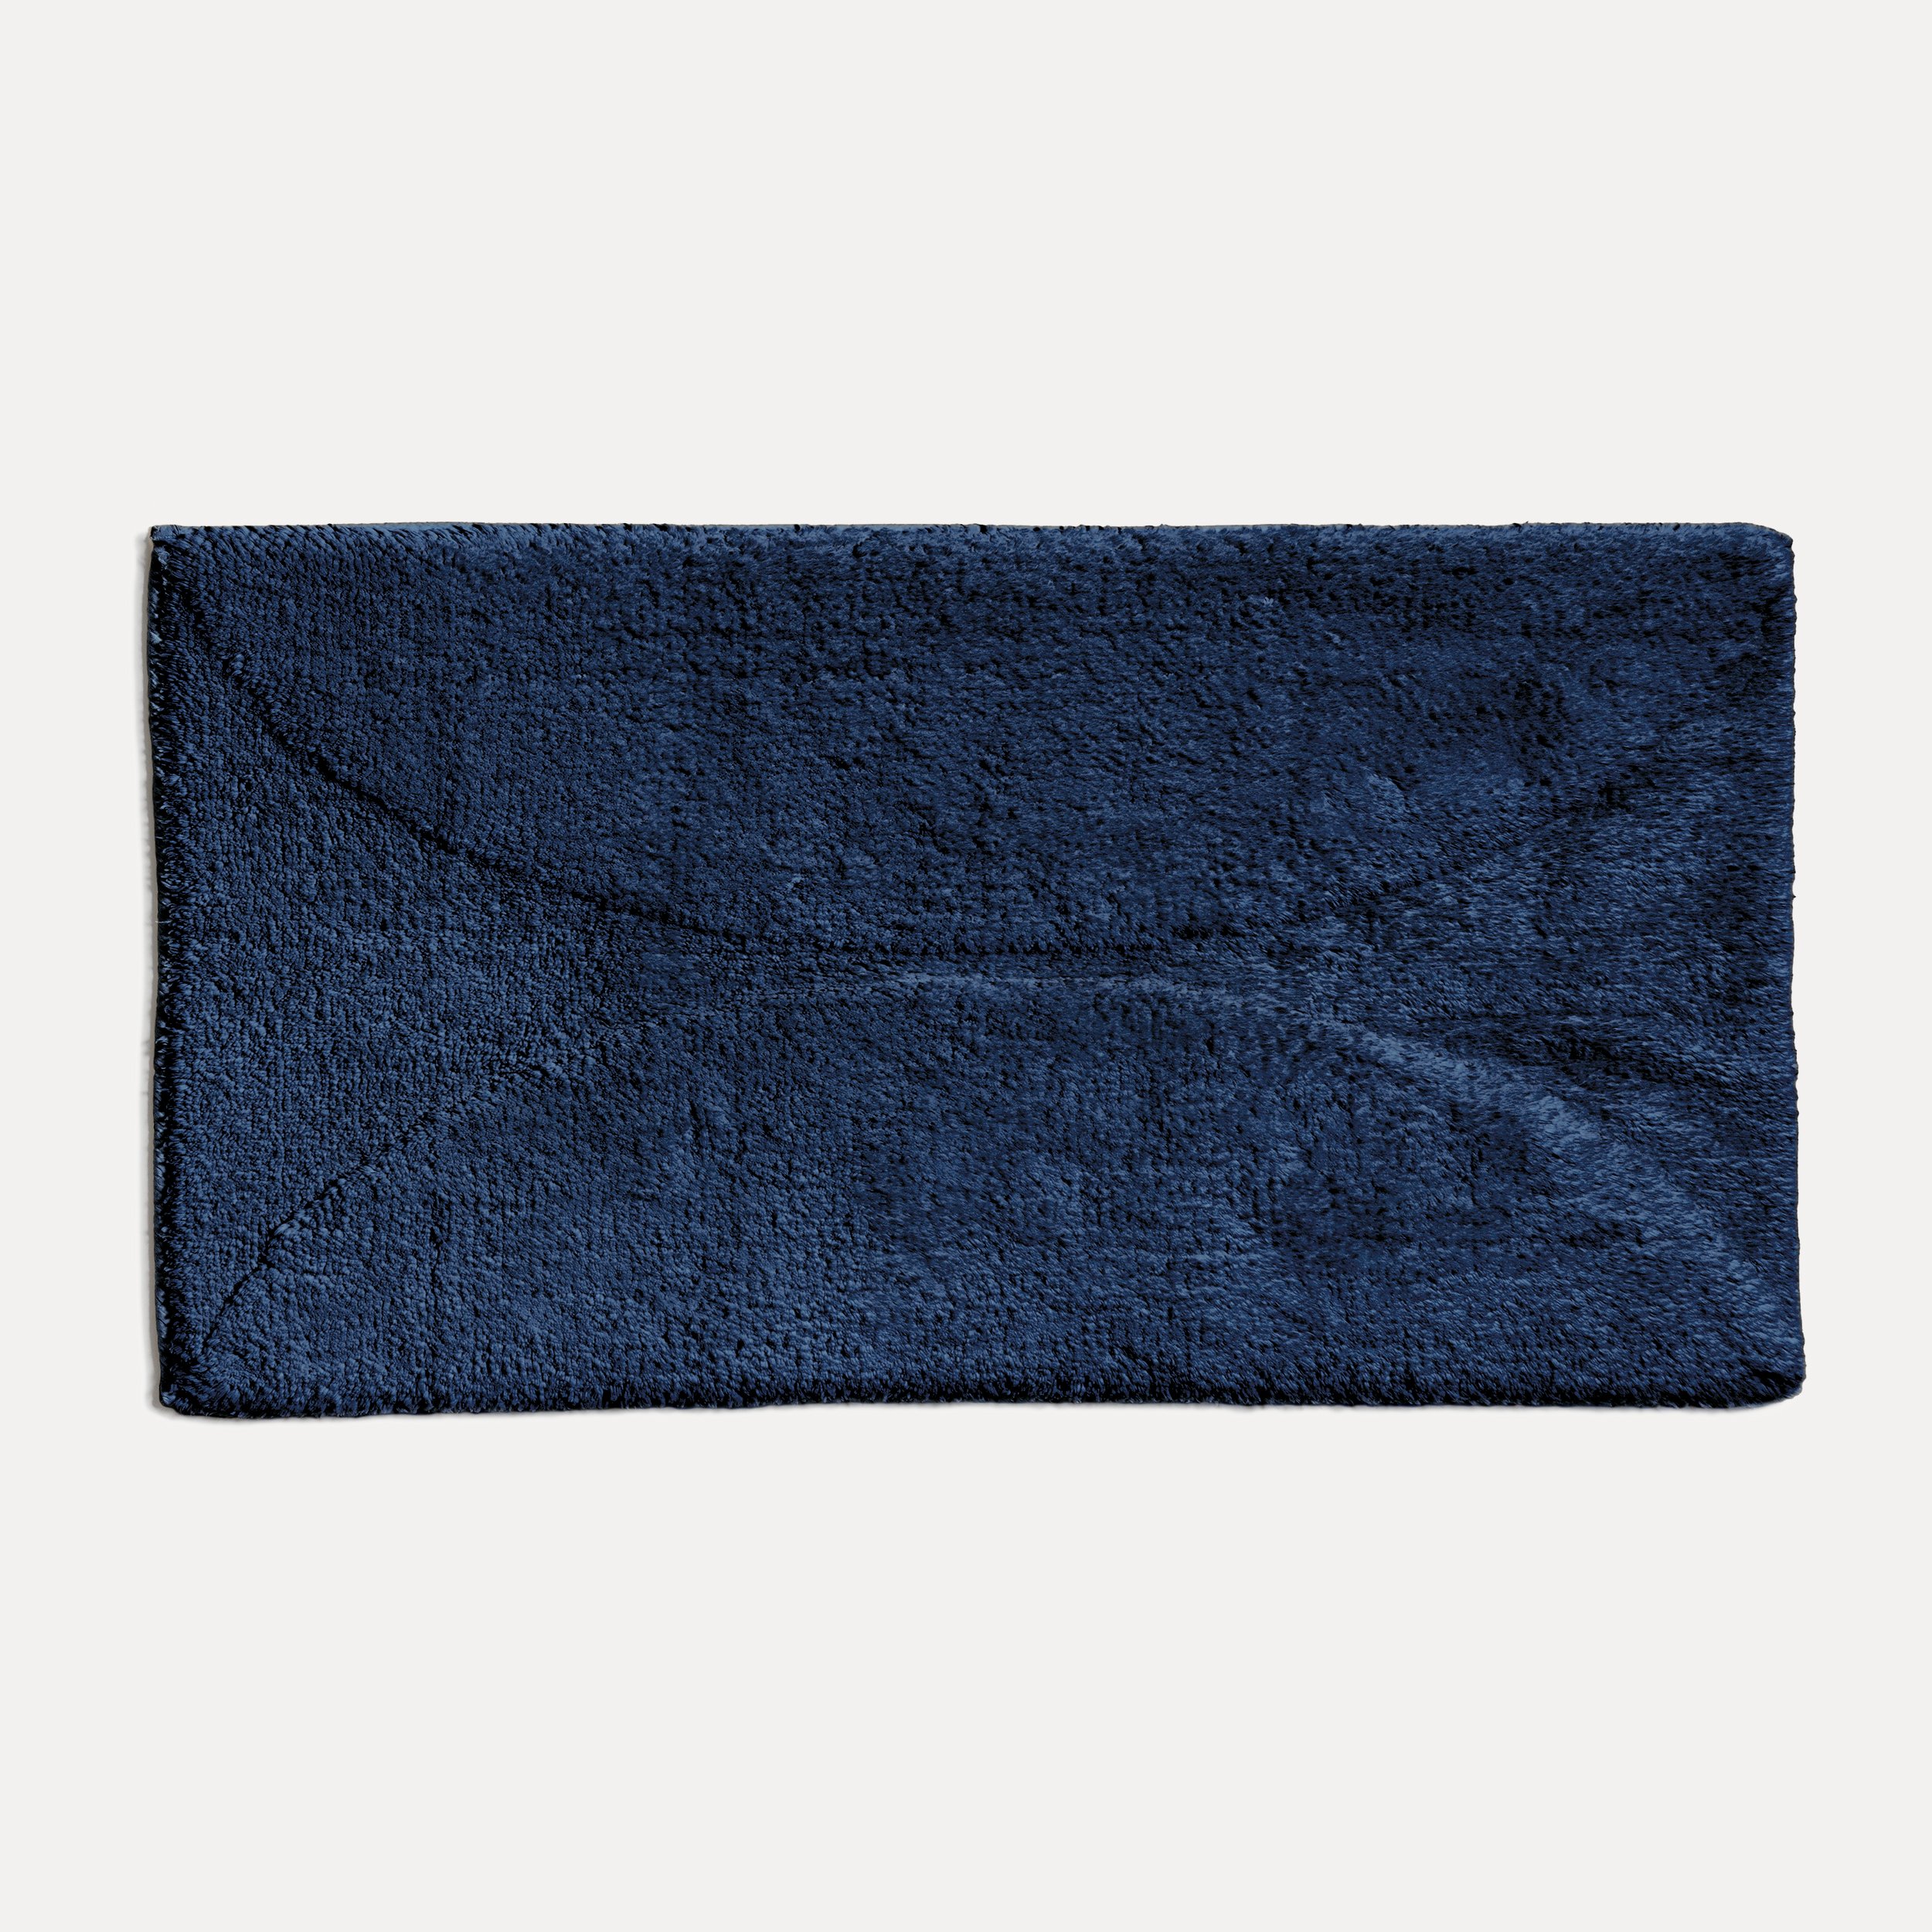 60x100 MÖVE cm möve Badematte blue)| Delights Blau (dark Autumn